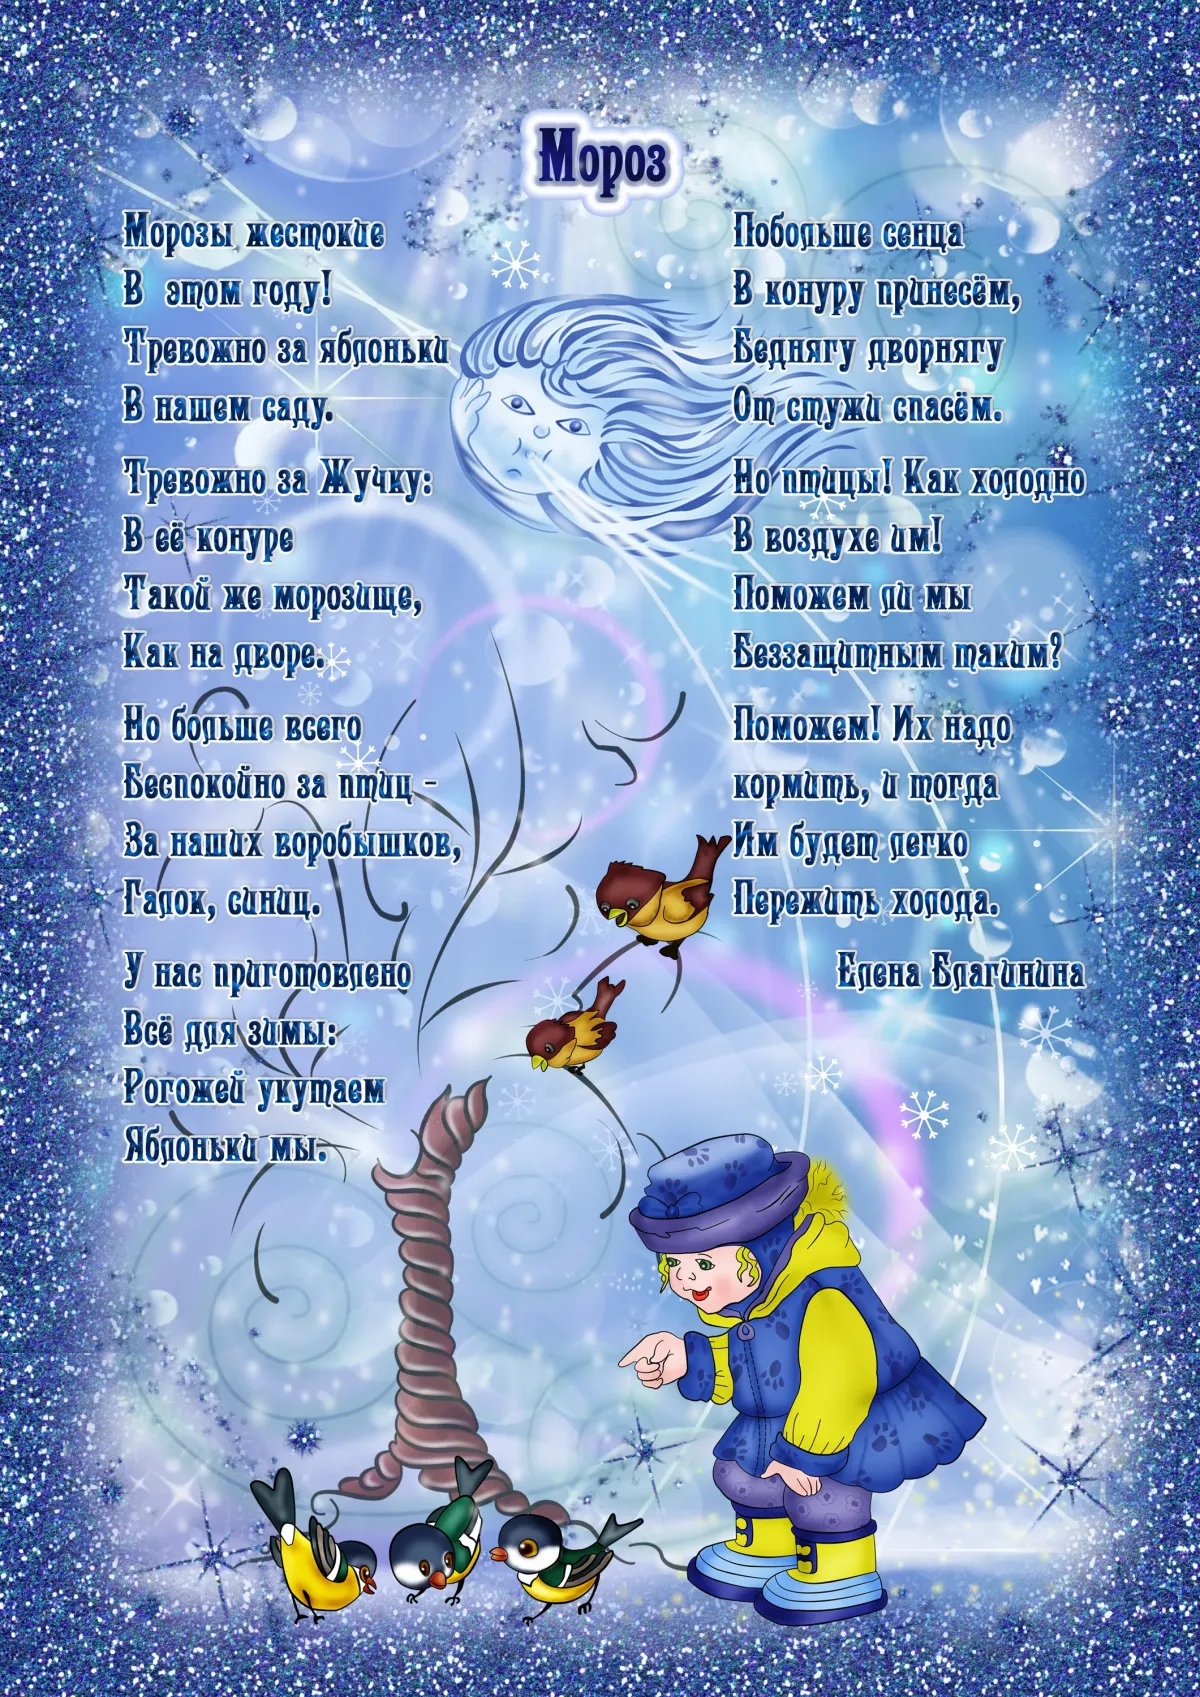 Апрель стихи для детей 6 7 лет. Стихи про зиму. Стихотворении ПРТ зиму. Стихи для дитие прозиму. Стихи про Зизу для детей.